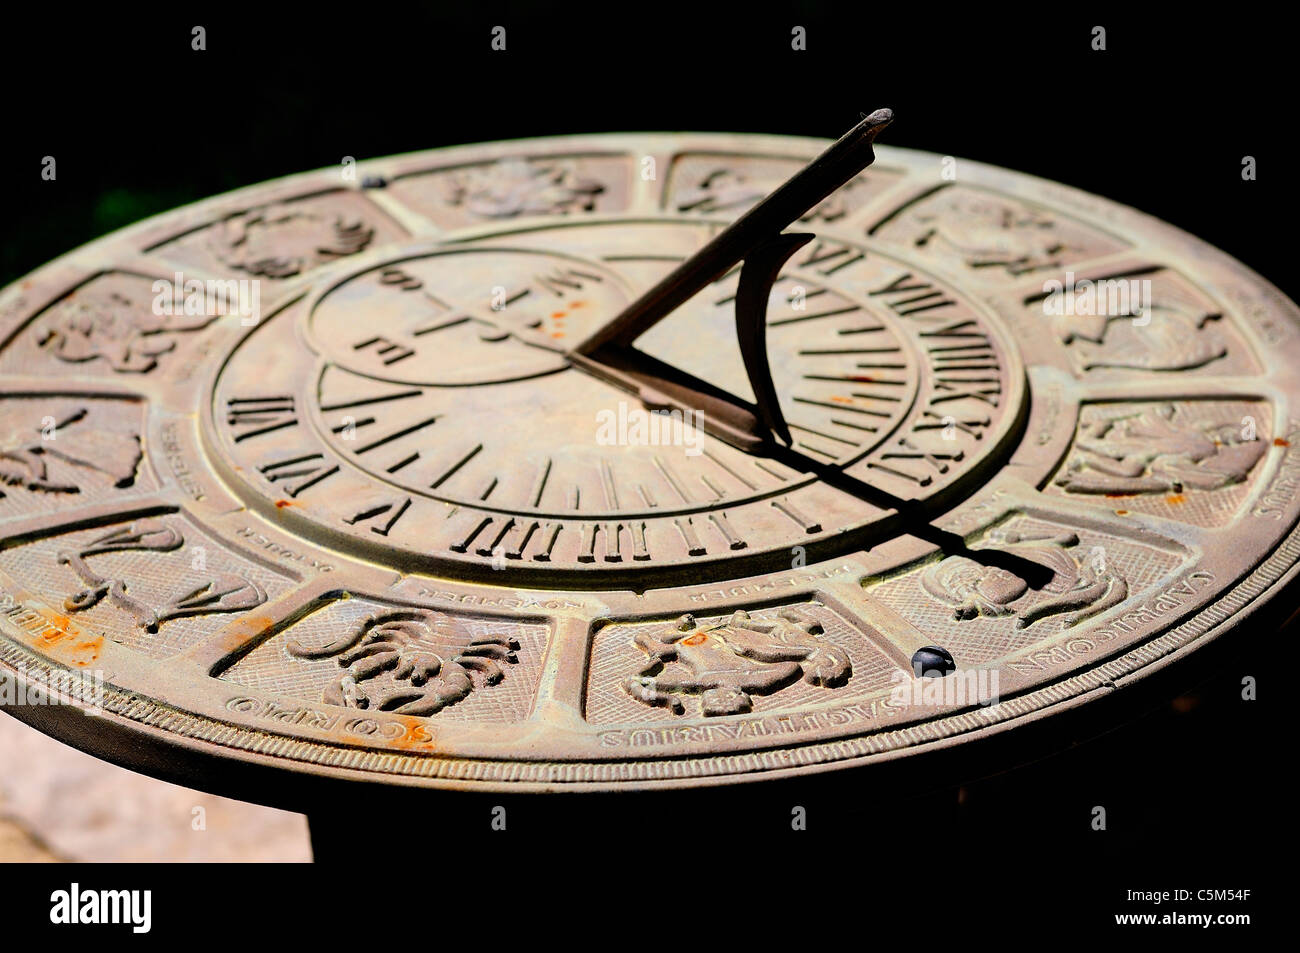 Digital Sundial, el reloj solar que da la hora con cifras